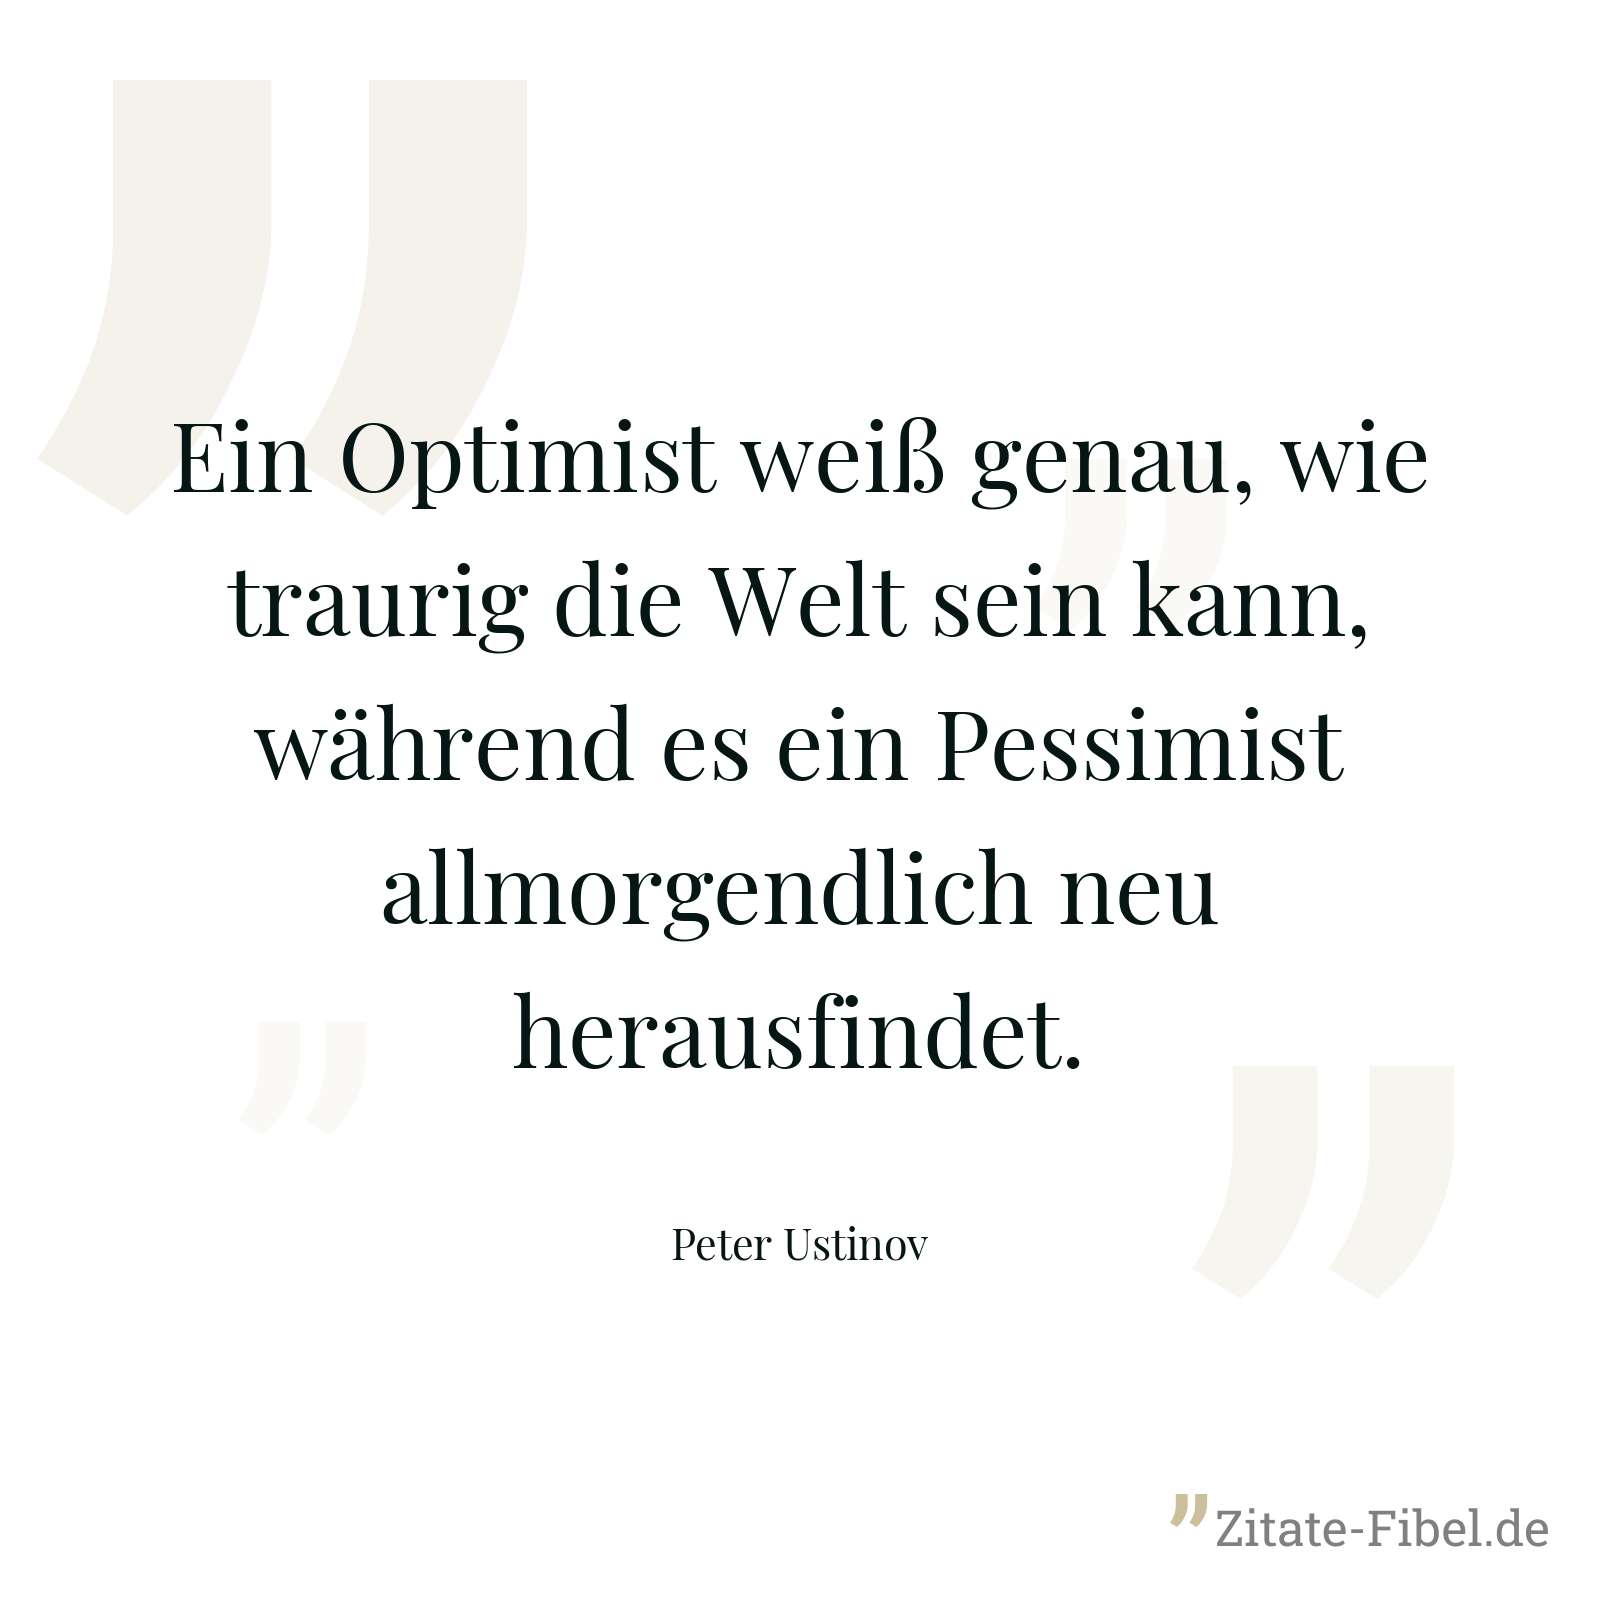 Ein Optimist weiß genau, wie traurig die Welt sein kann, während es ein Pessimist allmorgendlich neu herausfindet. - Peter Ustinov